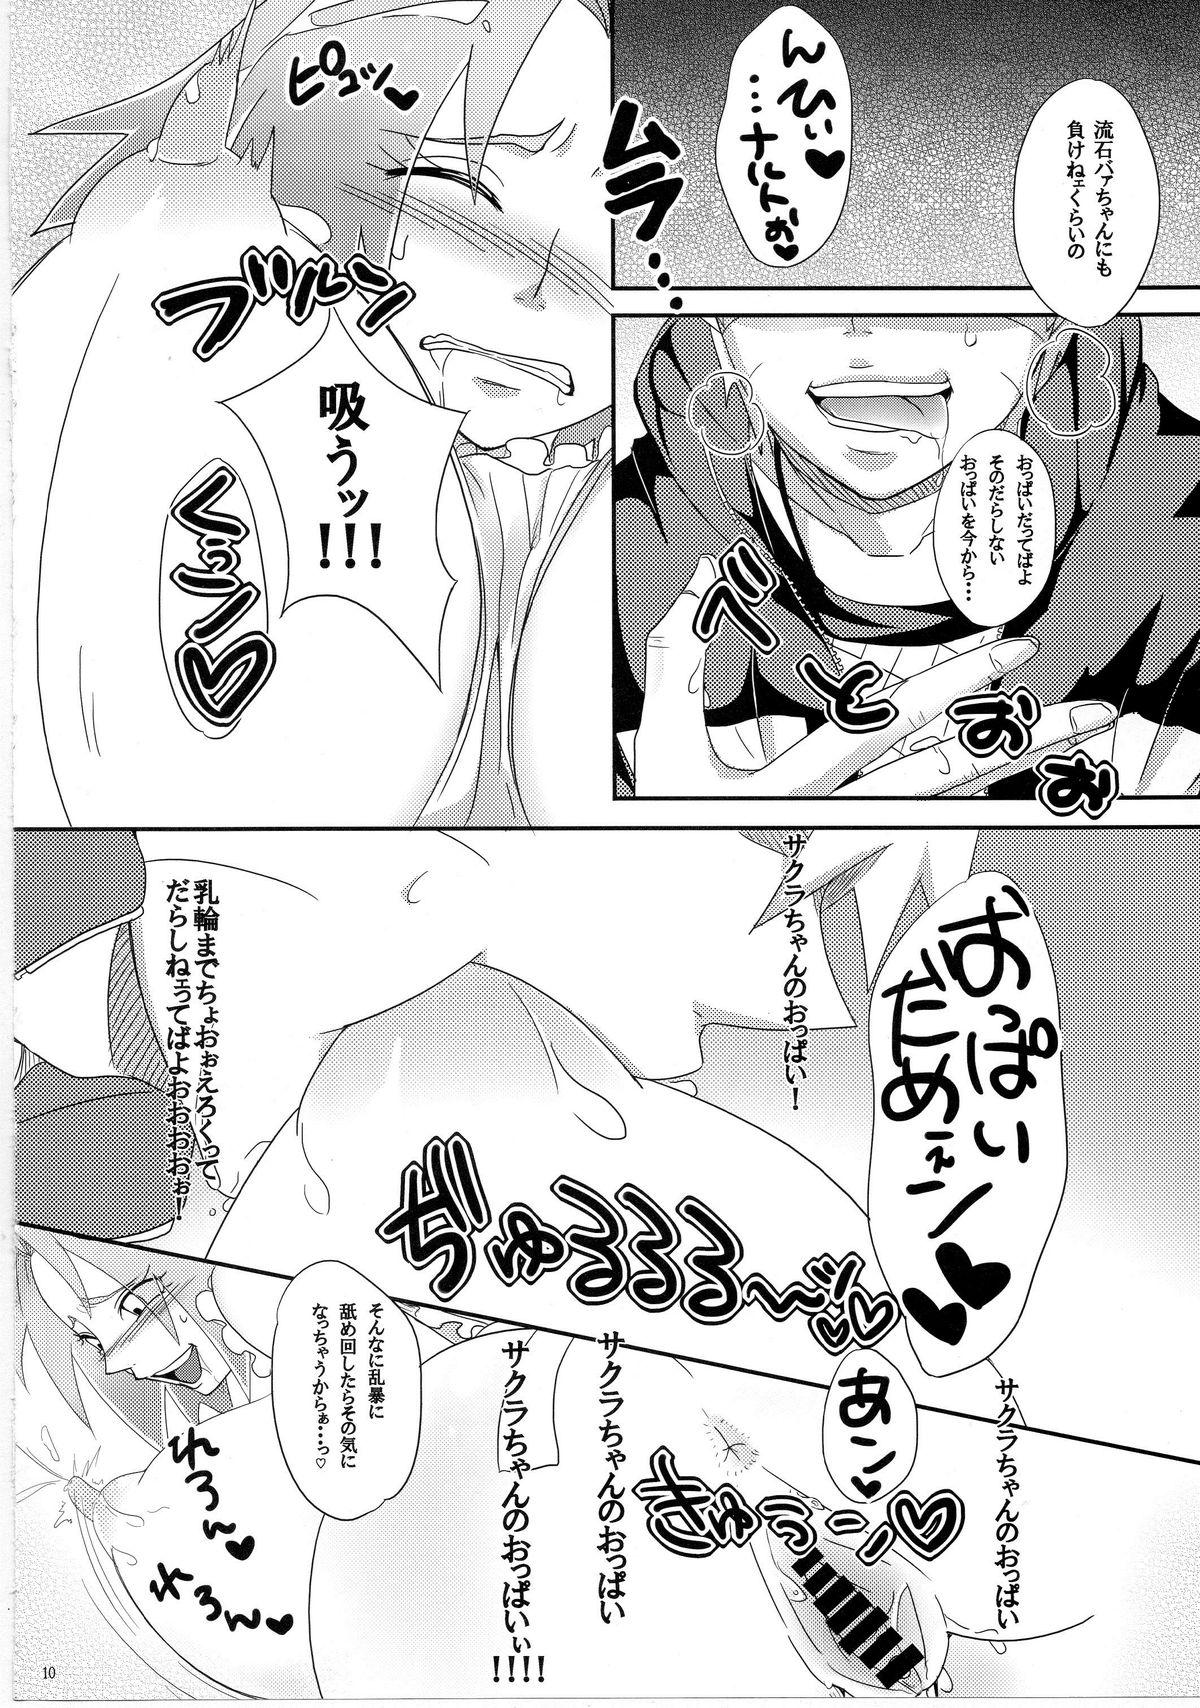 Jeune Mec Sato Ichiban no! - Naruto Exotic - Page 9